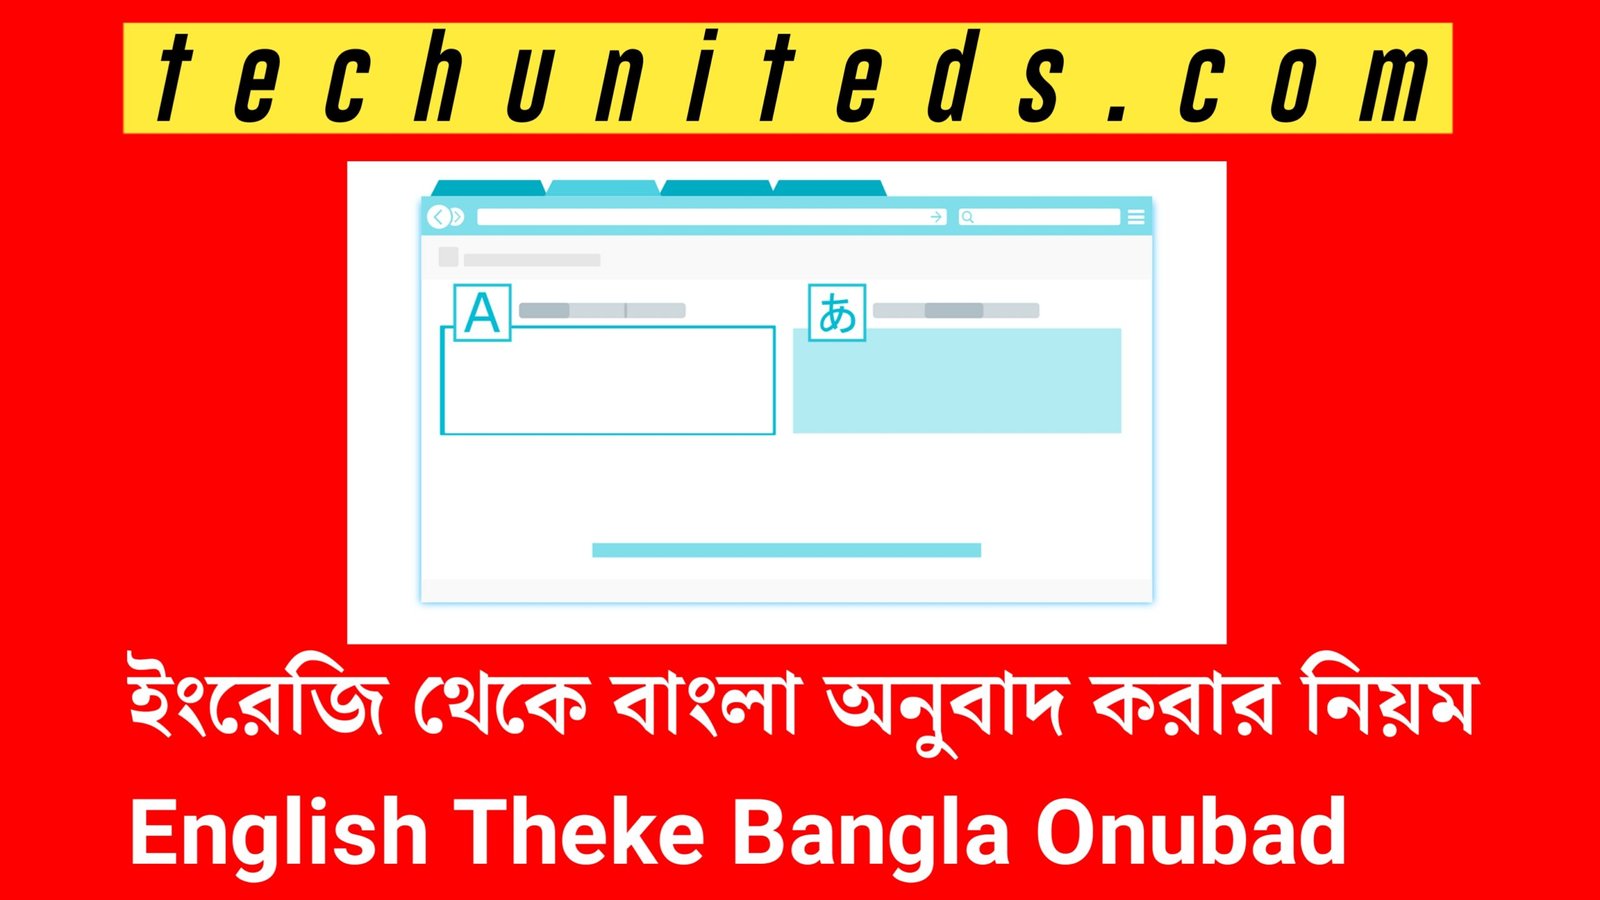 ইংরেজি থেকে বাংলা অনুবাদ করার নিয়ম | English Theke Bangla Onubad